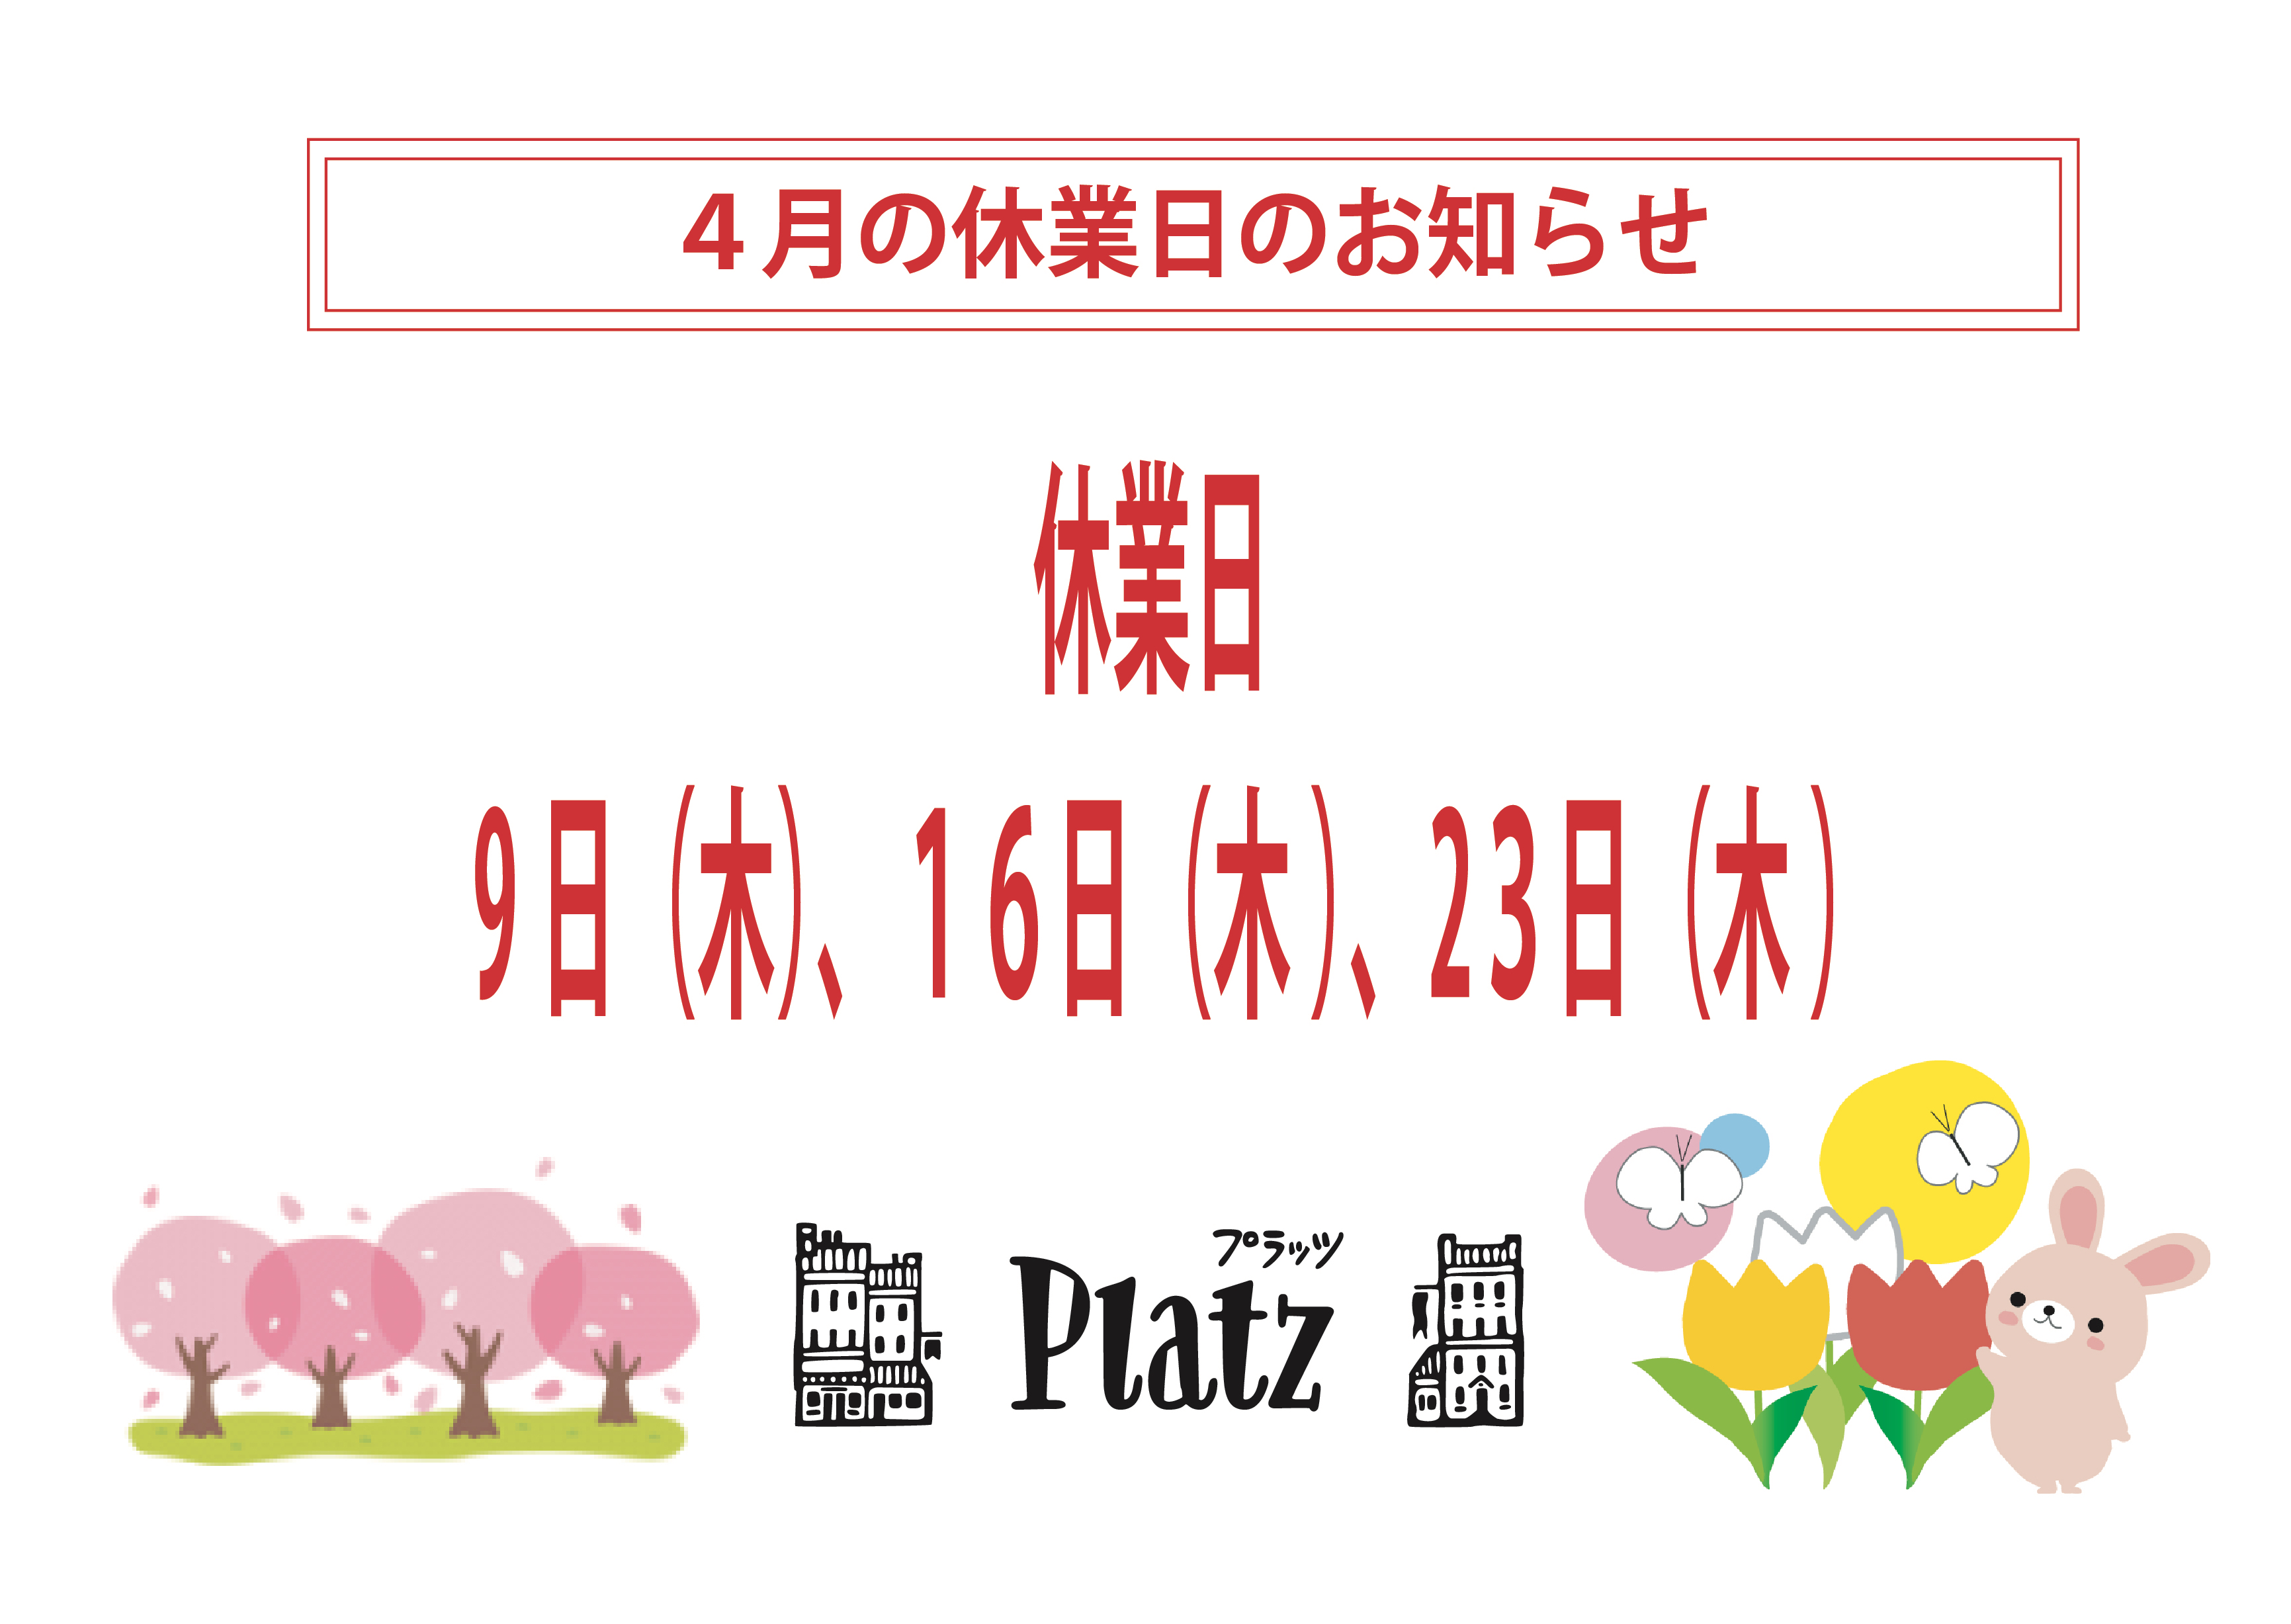 http://www.kyoto-platz.jp/news/images/2020.4%E6%9C%88%E4%BC%91%E6%A5%AD%E6%97%A5.jpg